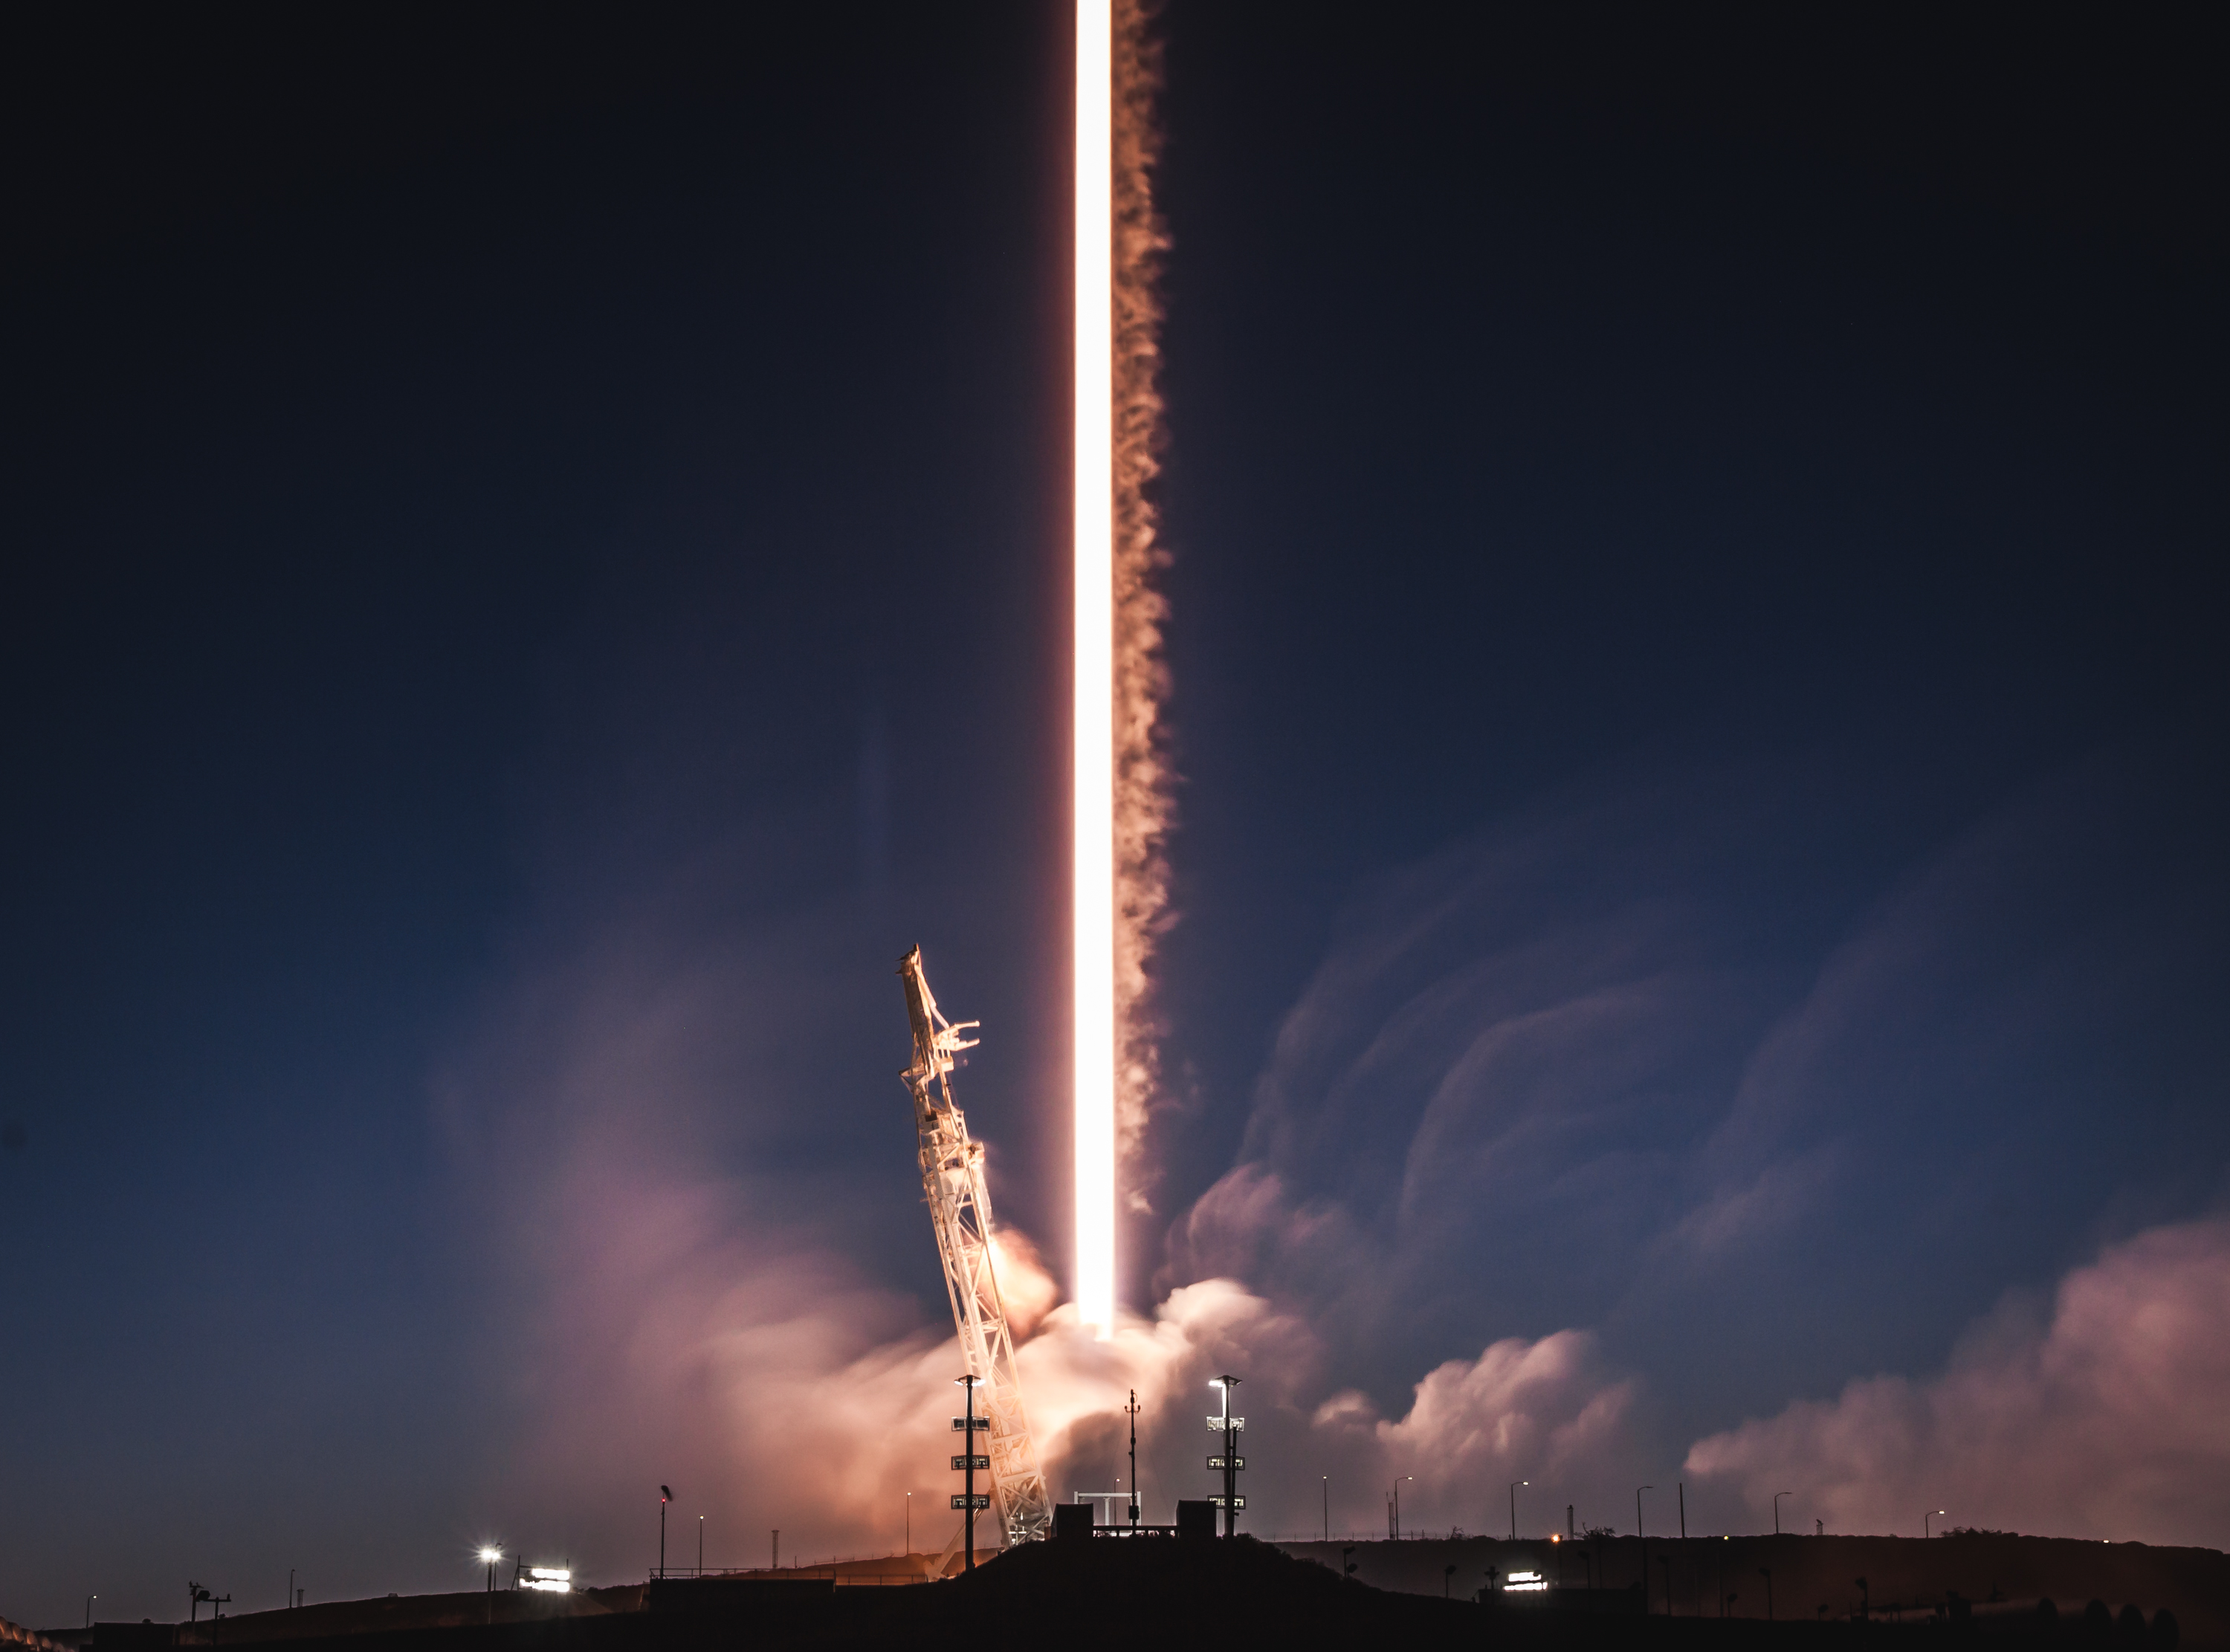 Phóng tên lửa Falcon 9 – một trải nghiệm mà không ai nên bỏ qua. Những hình ảnh từ chuyến đi này sẽ làm say mê những người đam mê vũ trụ. Từ việc chuẩn bị tên lửa đến những phút giây hồi hộp chờ đợi, bạn sẽ cảm nhận được tinh thần của team SpaceX khi họ tạo ra chuyến bay thành công nhất của công ty. 